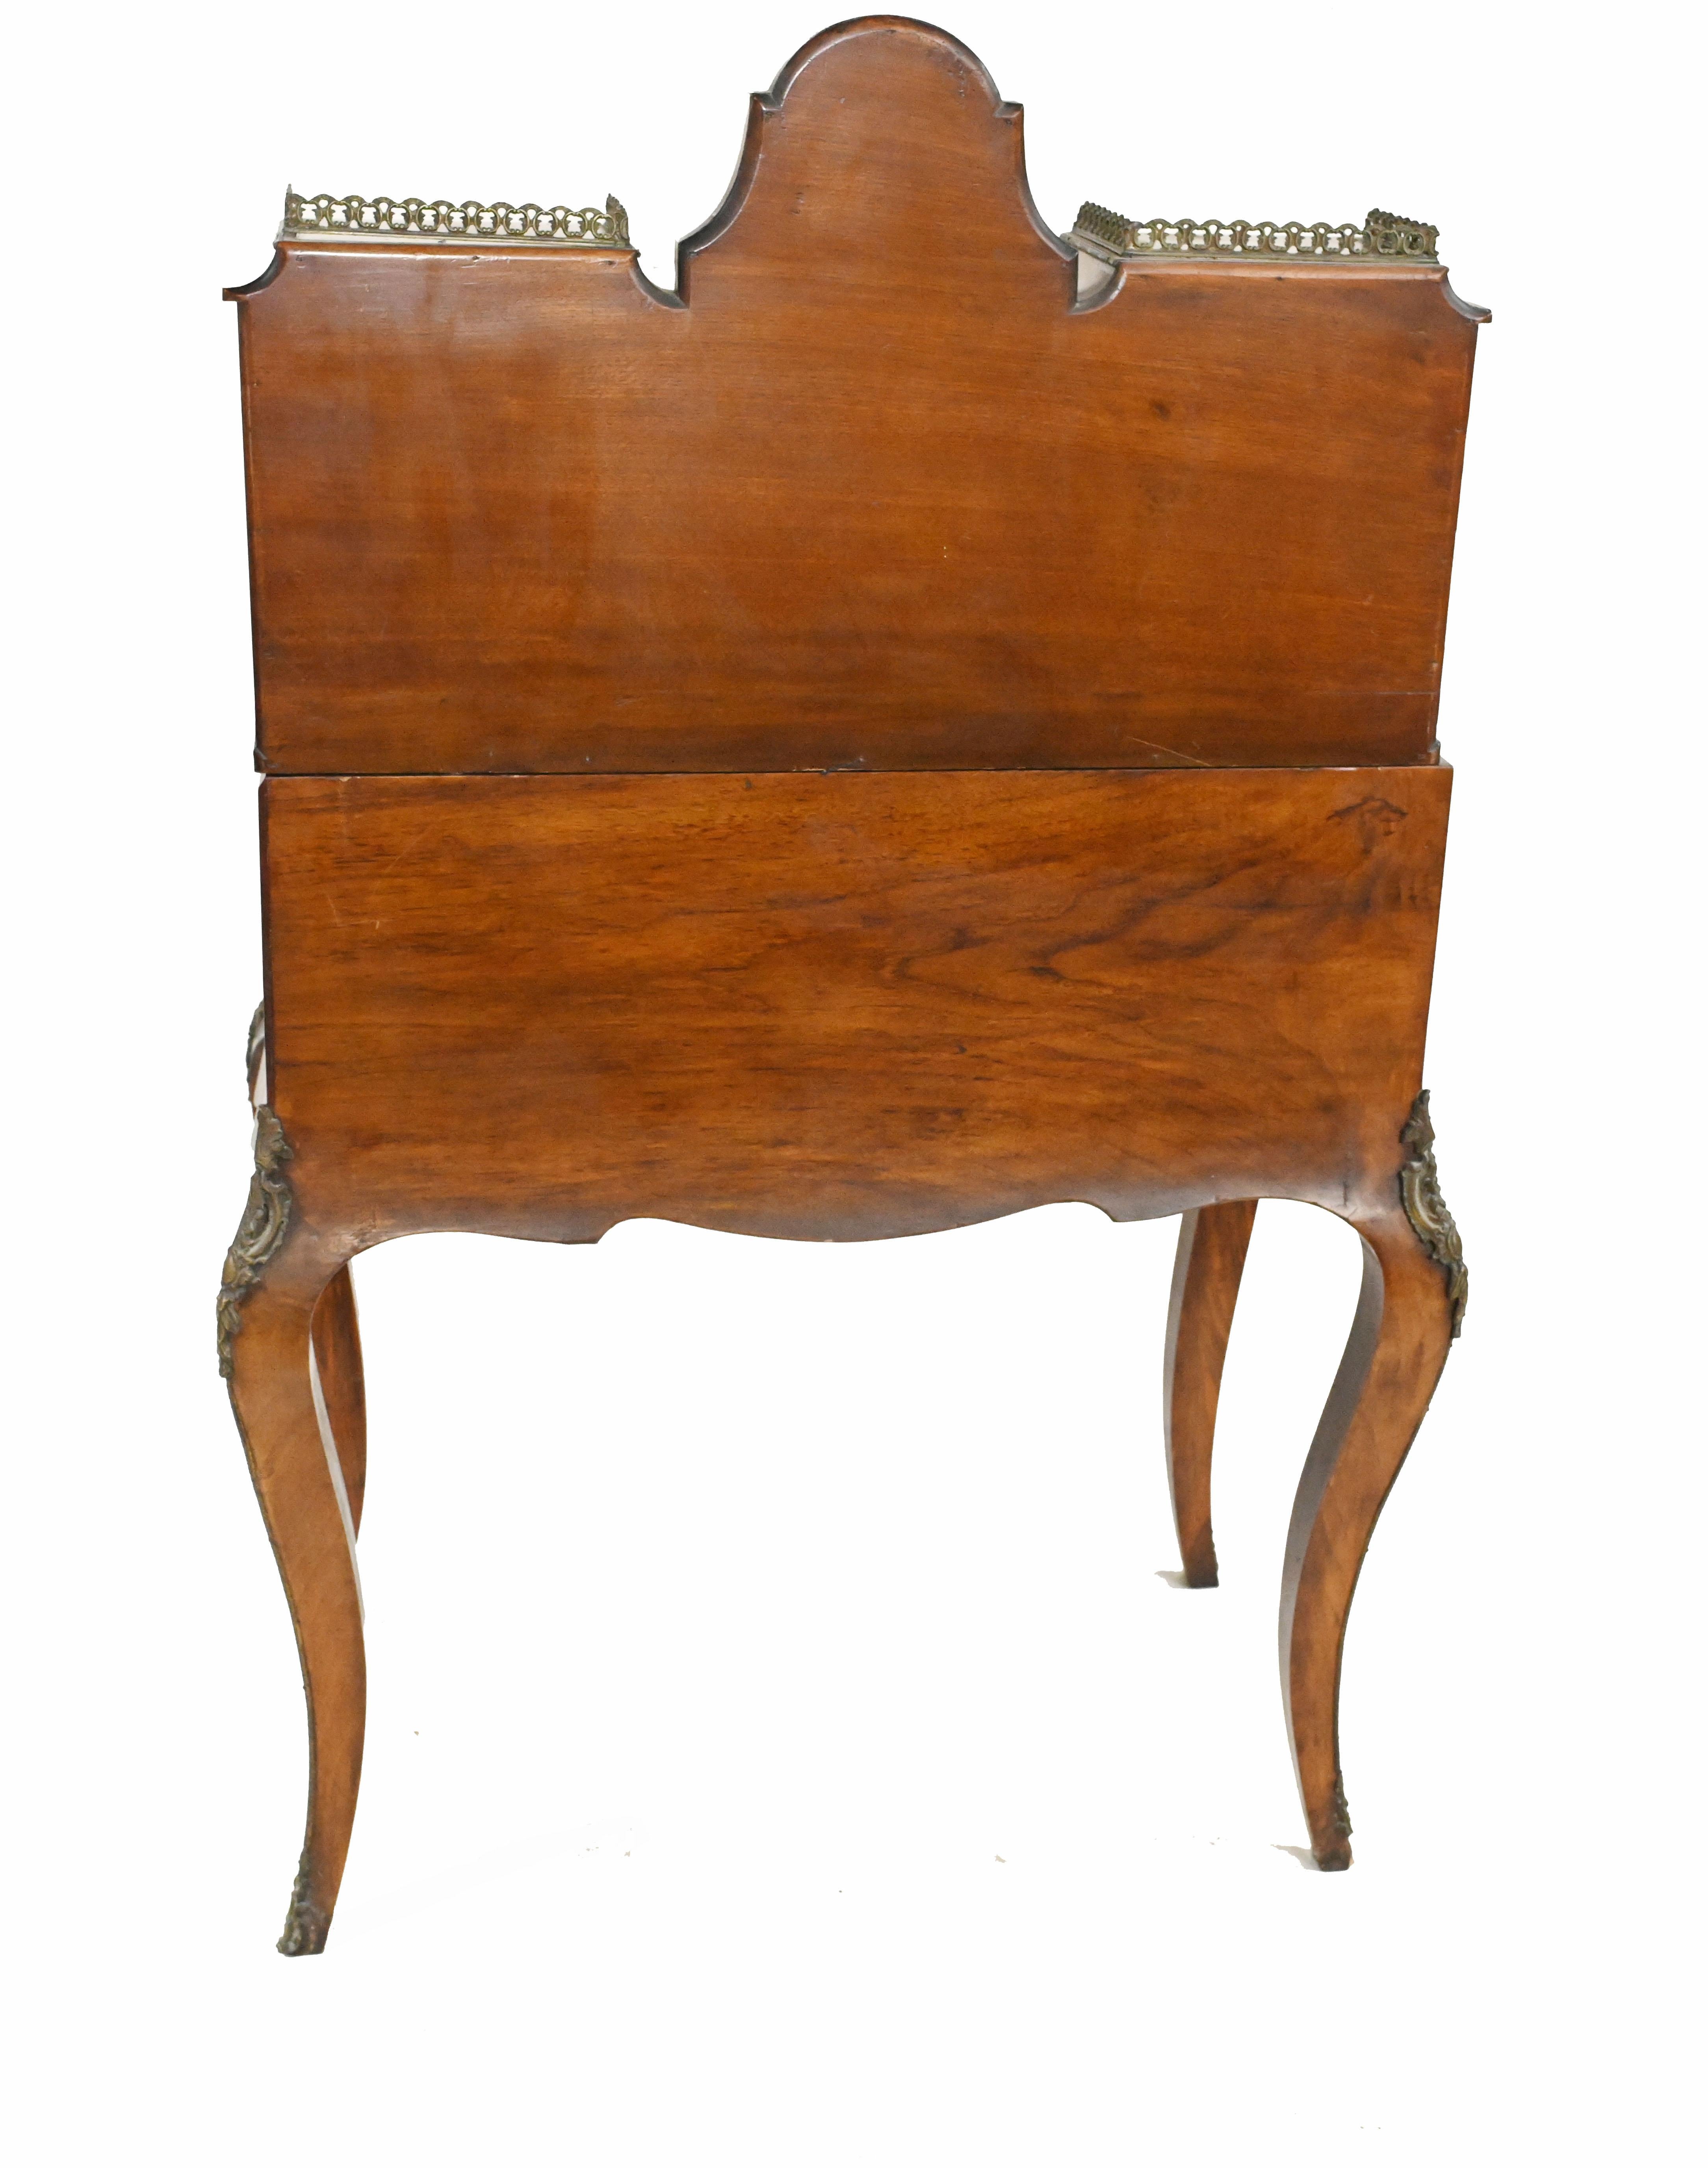 Antique French Desk, Walnut Bonheur De Jour Ladies Desk circa 1880 For Sale 5